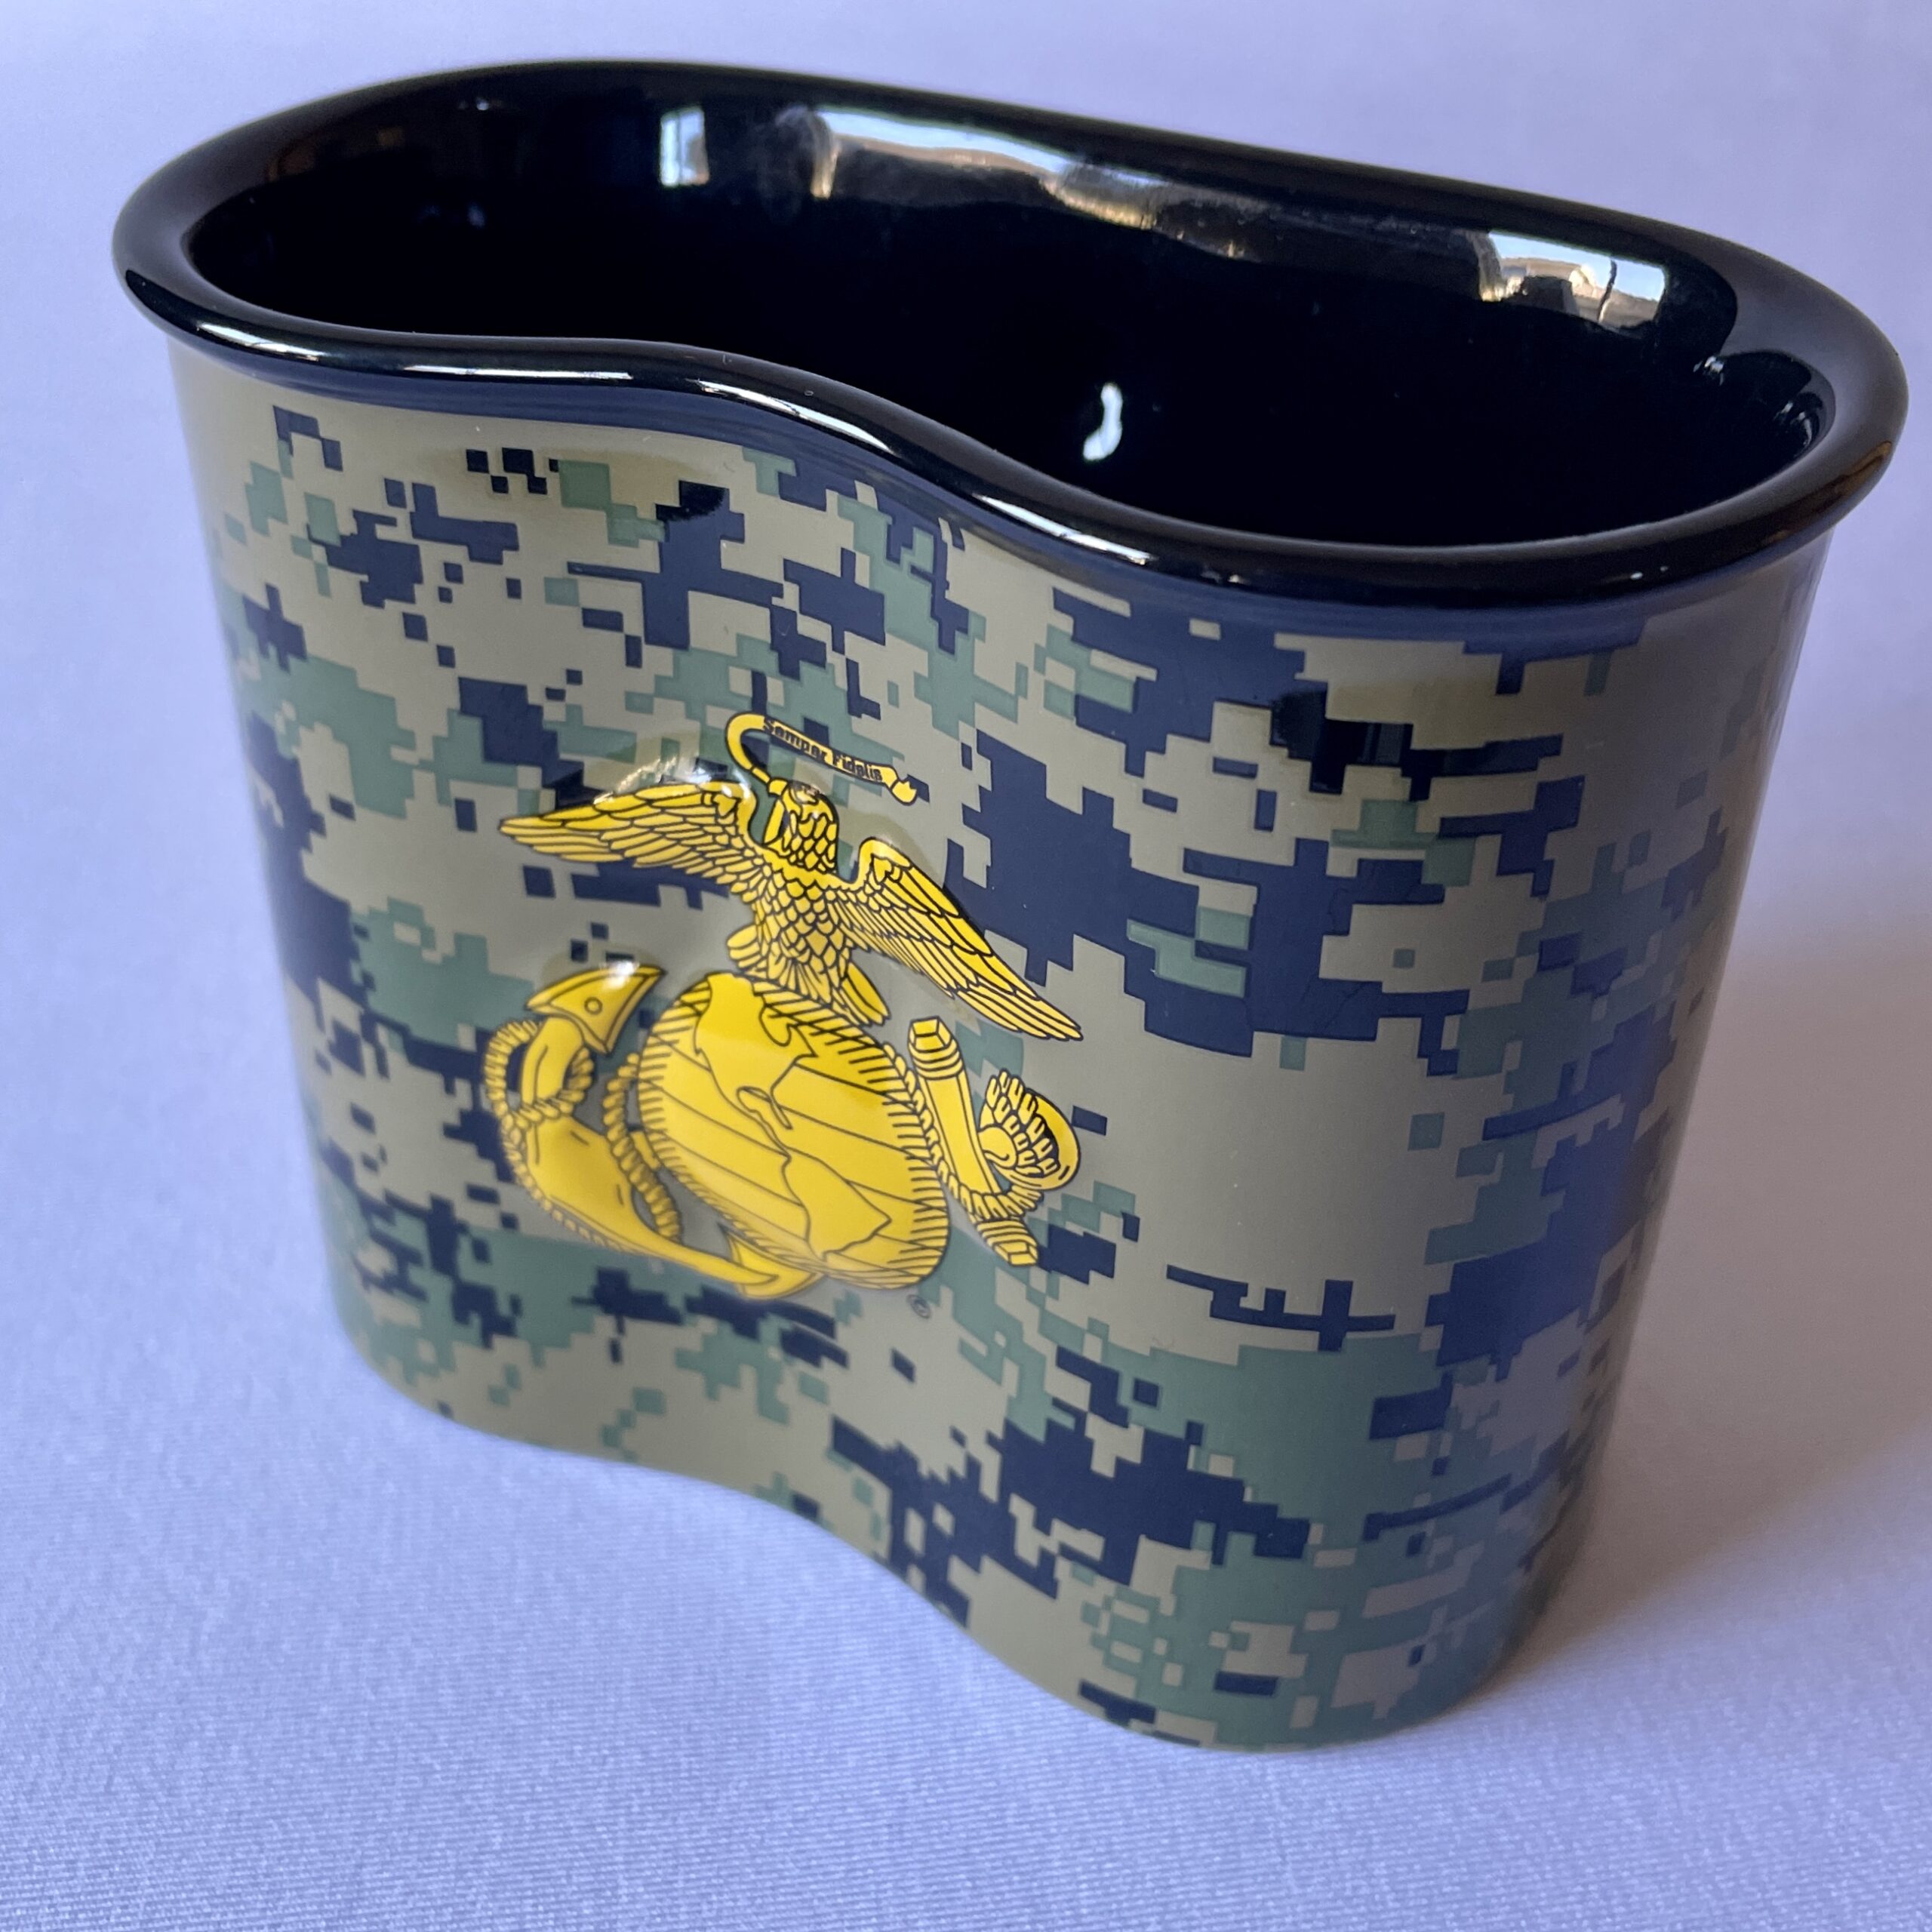 Canteen Cup Coffee K-Pot – O.P. Veteran